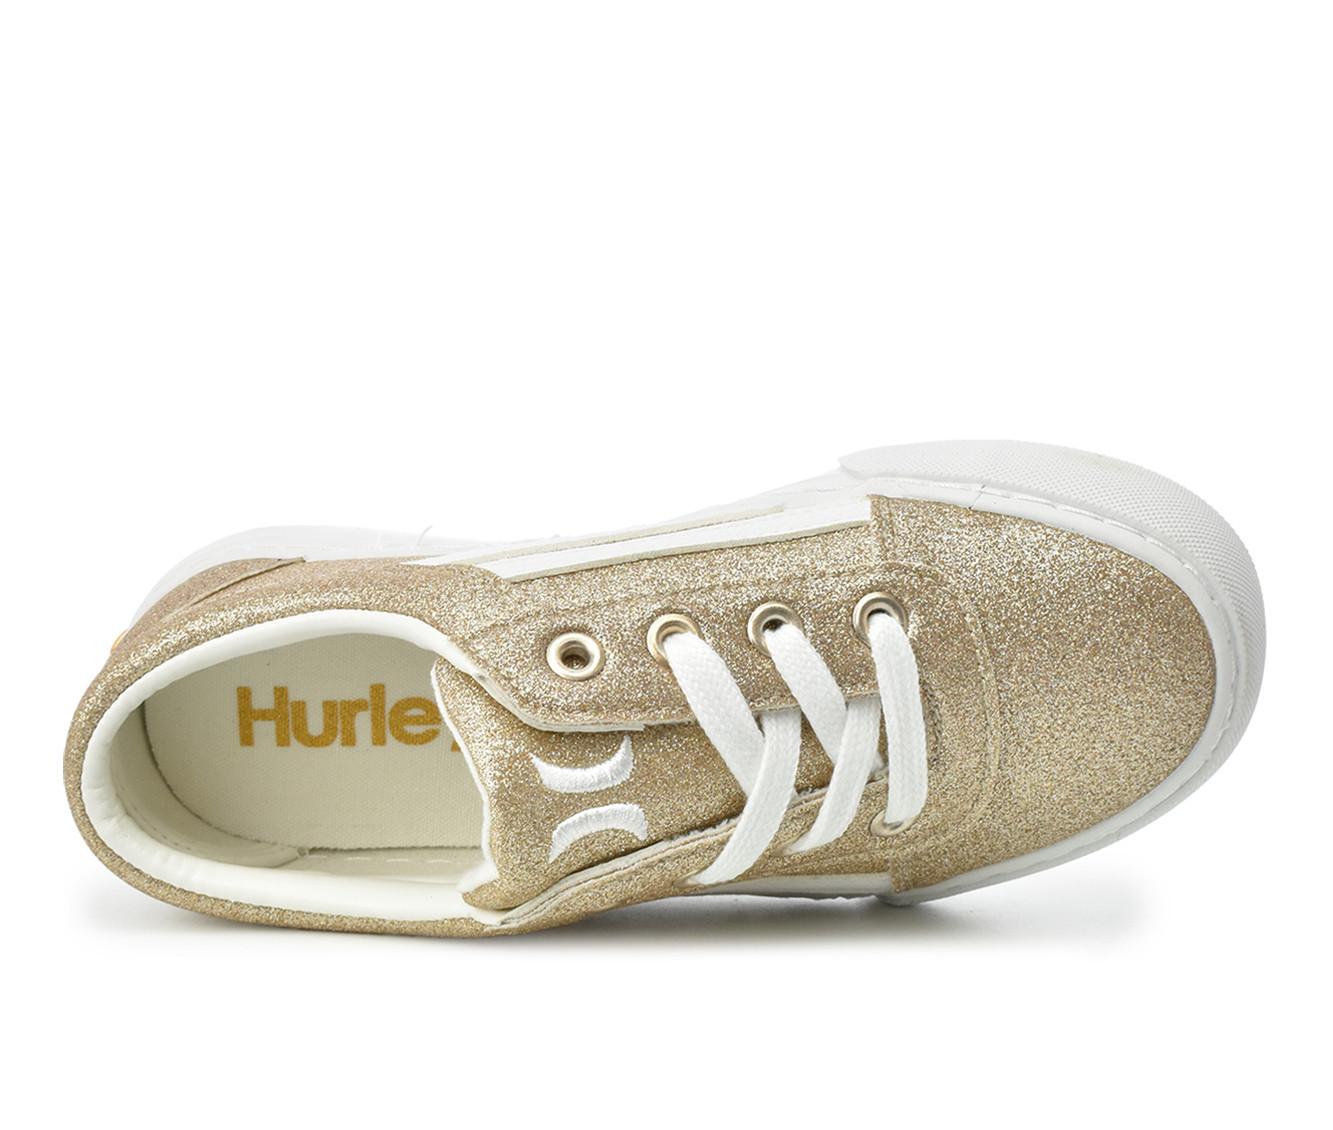 Girls' Hurley Little & Big Kid Boardy Sneakers